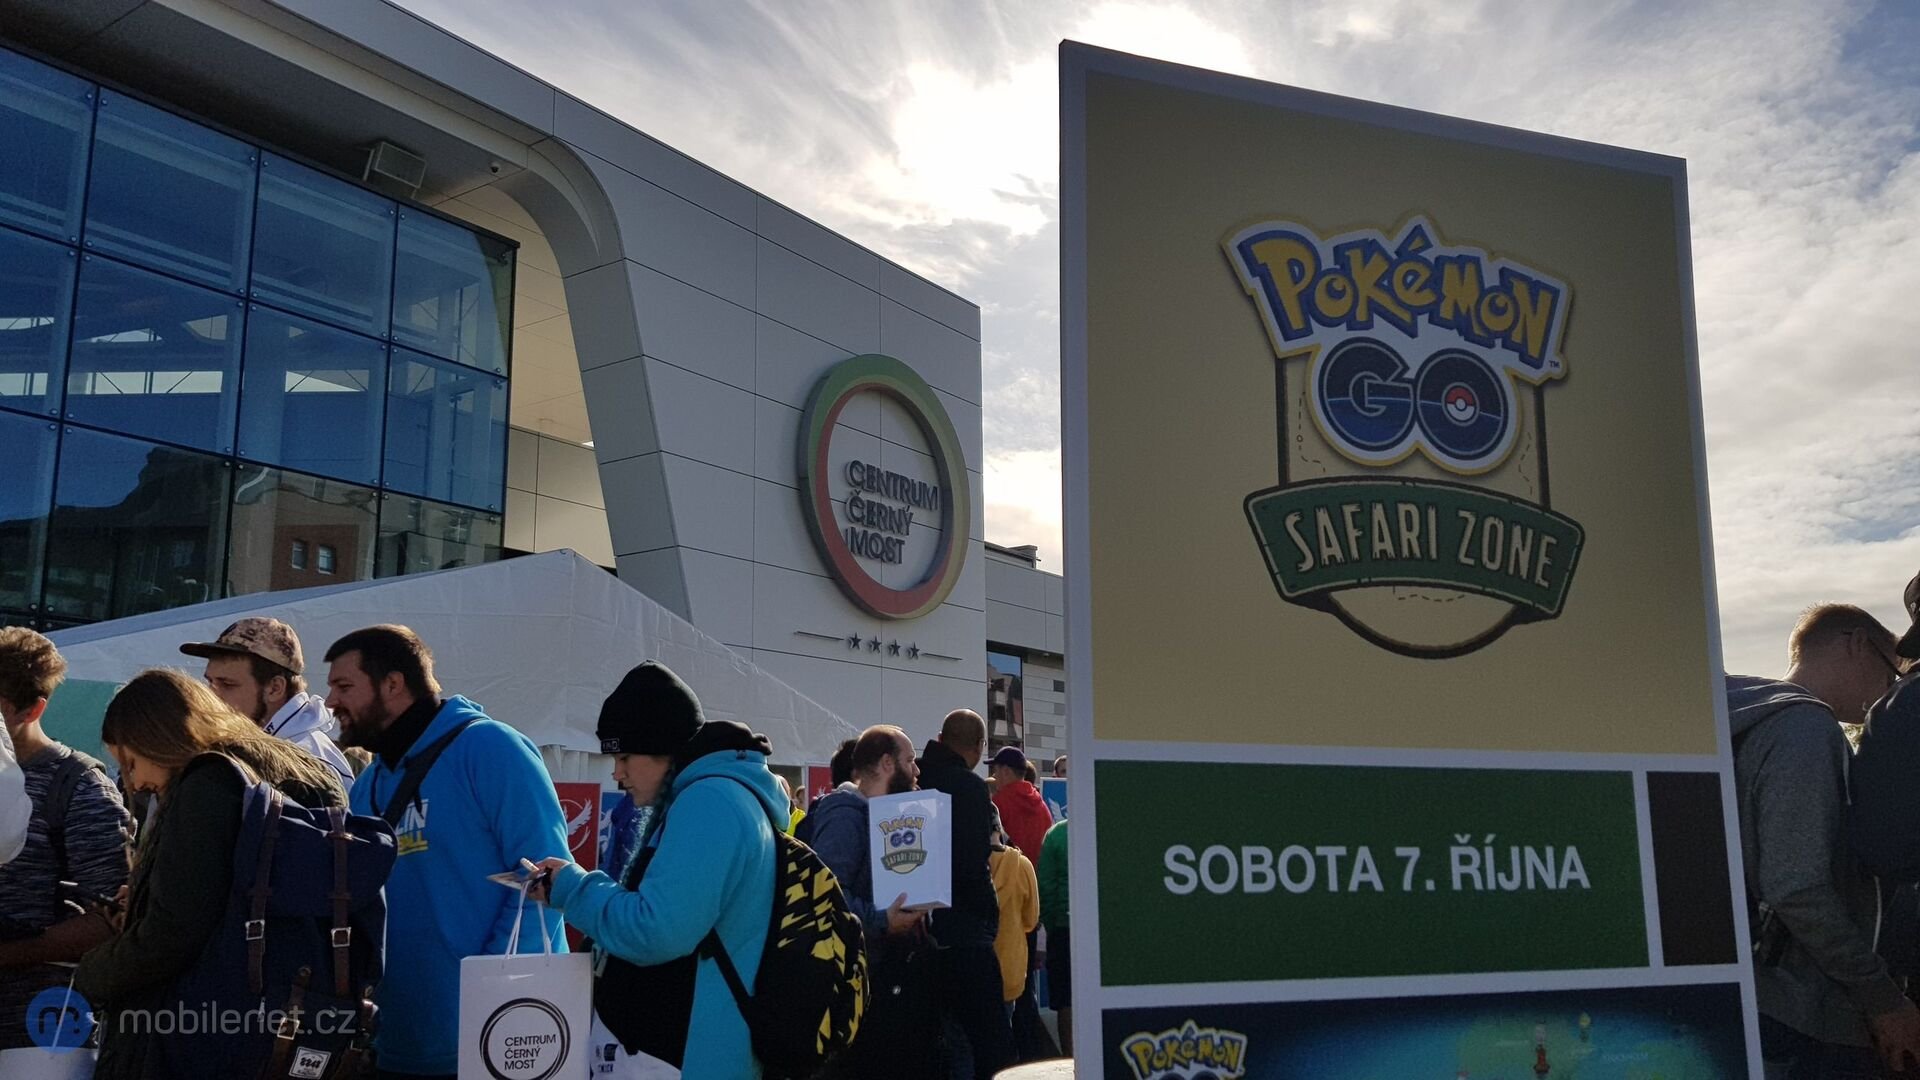 Pokémon GO Safari zone event v Praze